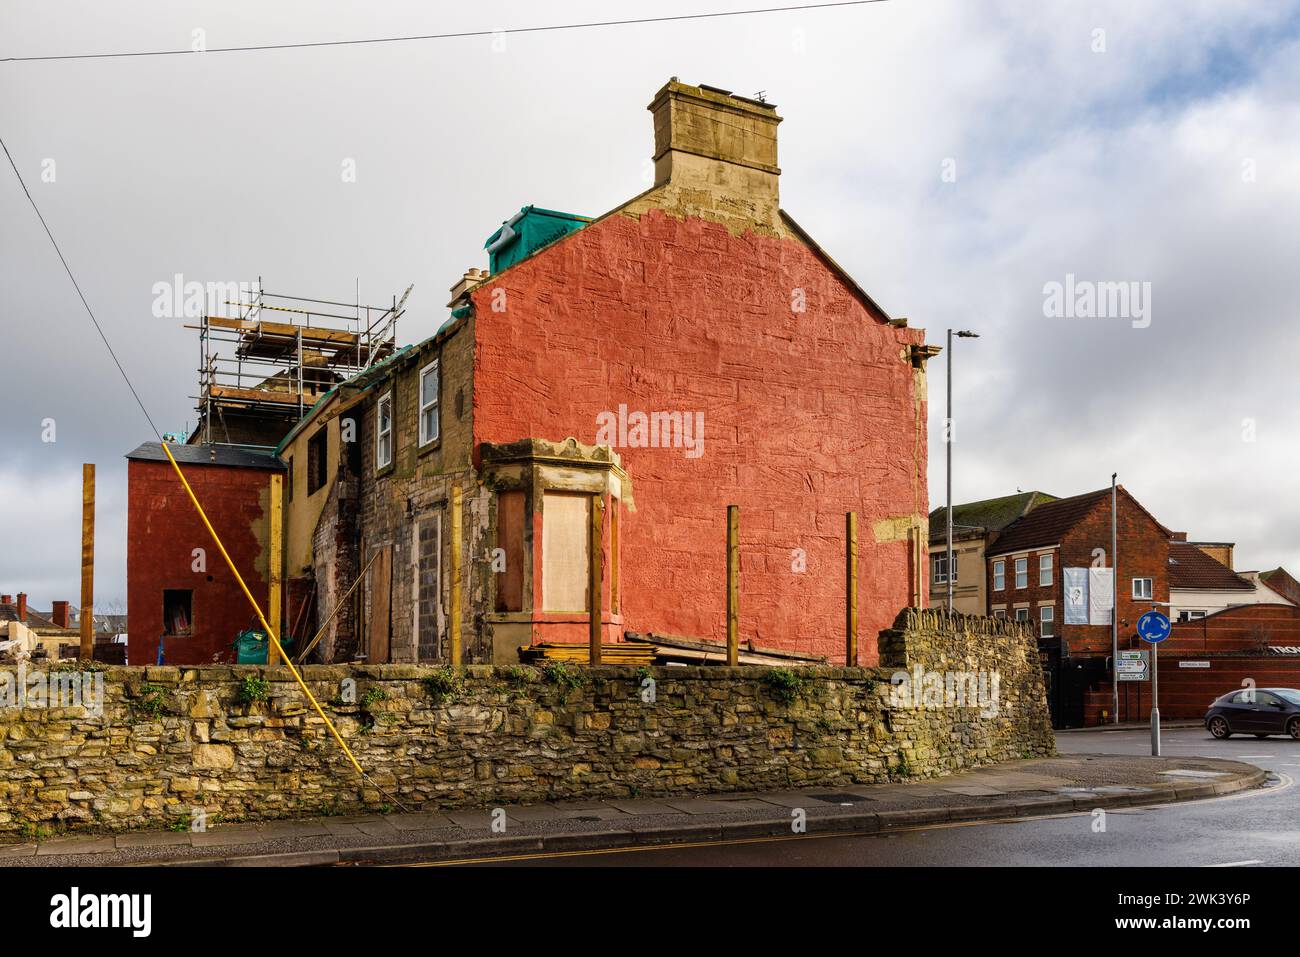 17 - 19 Stallard Street in fase di ristrutturazione e dipinto di rosso per il momento, Trowbridge, Wiltshire, Inghilterra, Regno Unito Foto Stock